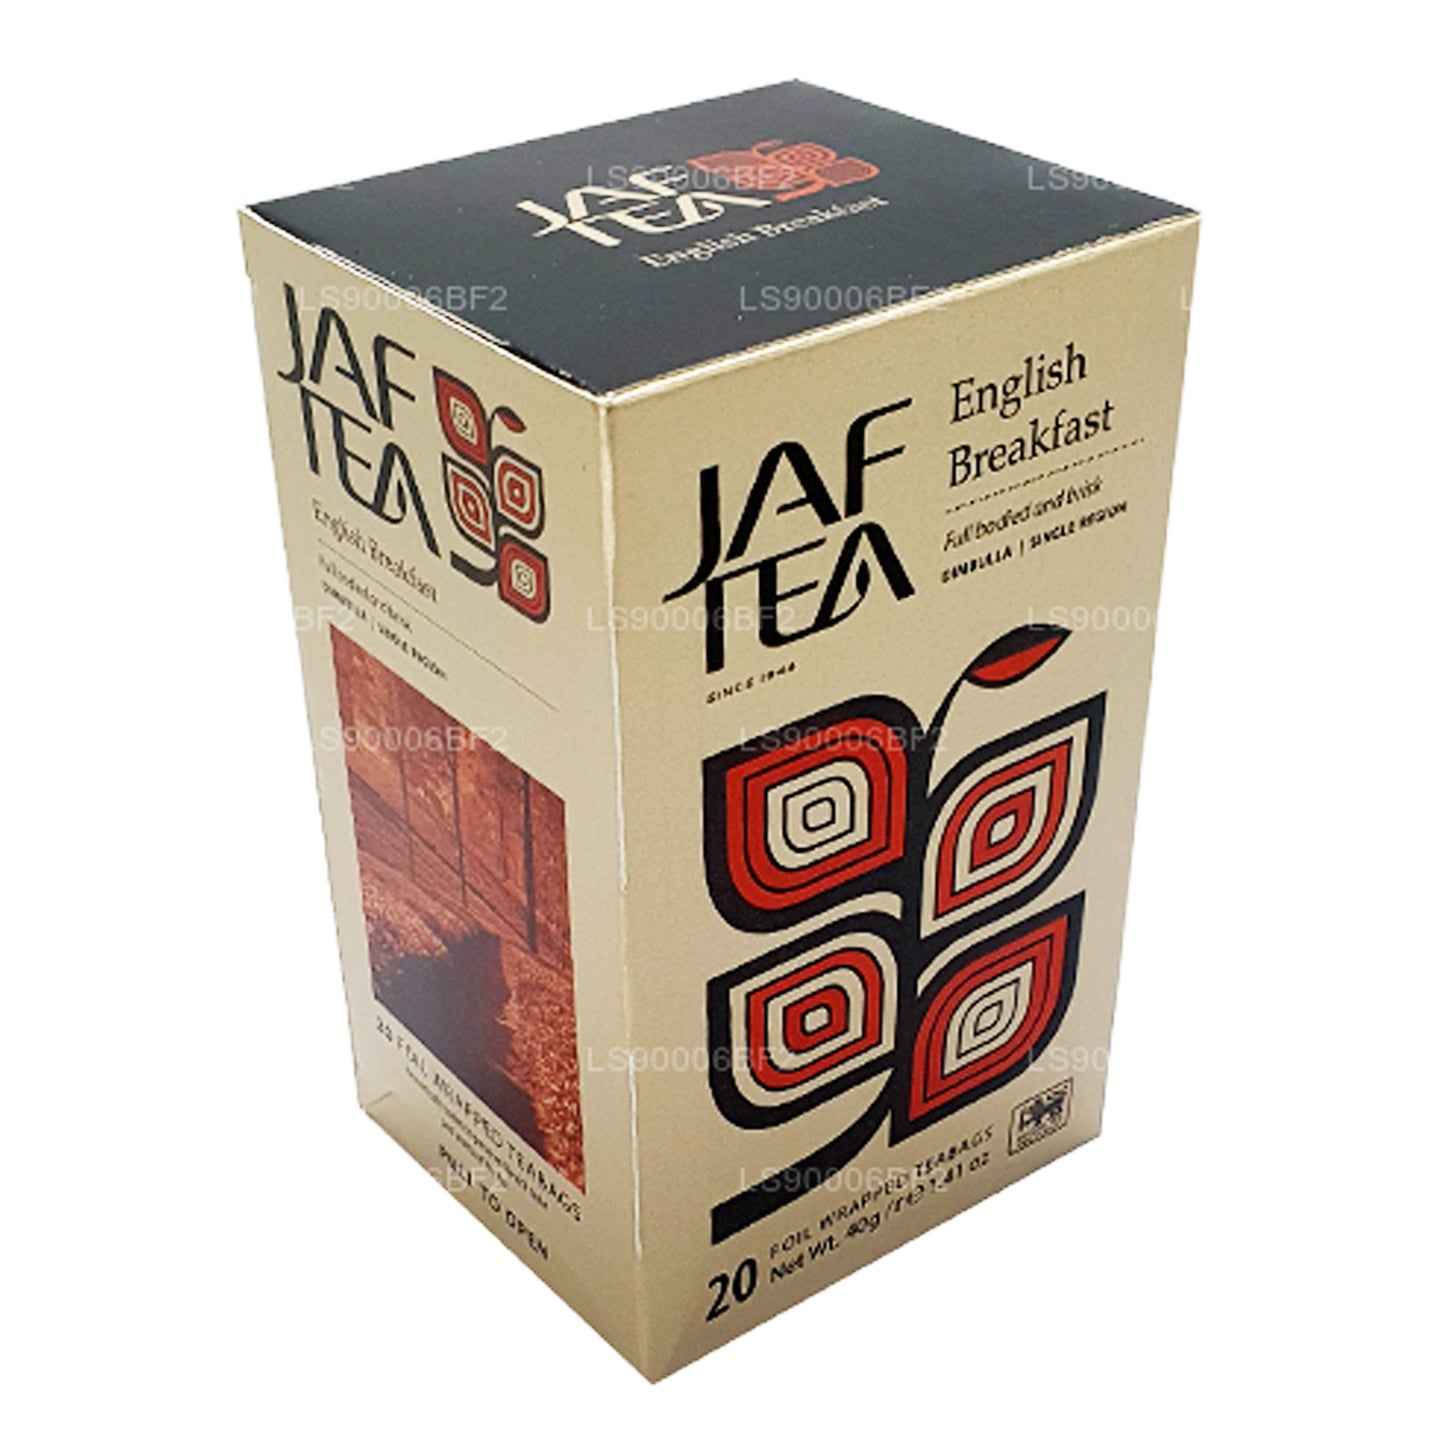 Jaf Tea İngiliz Kahvaltısı (40g) 20 Çay Poşeti